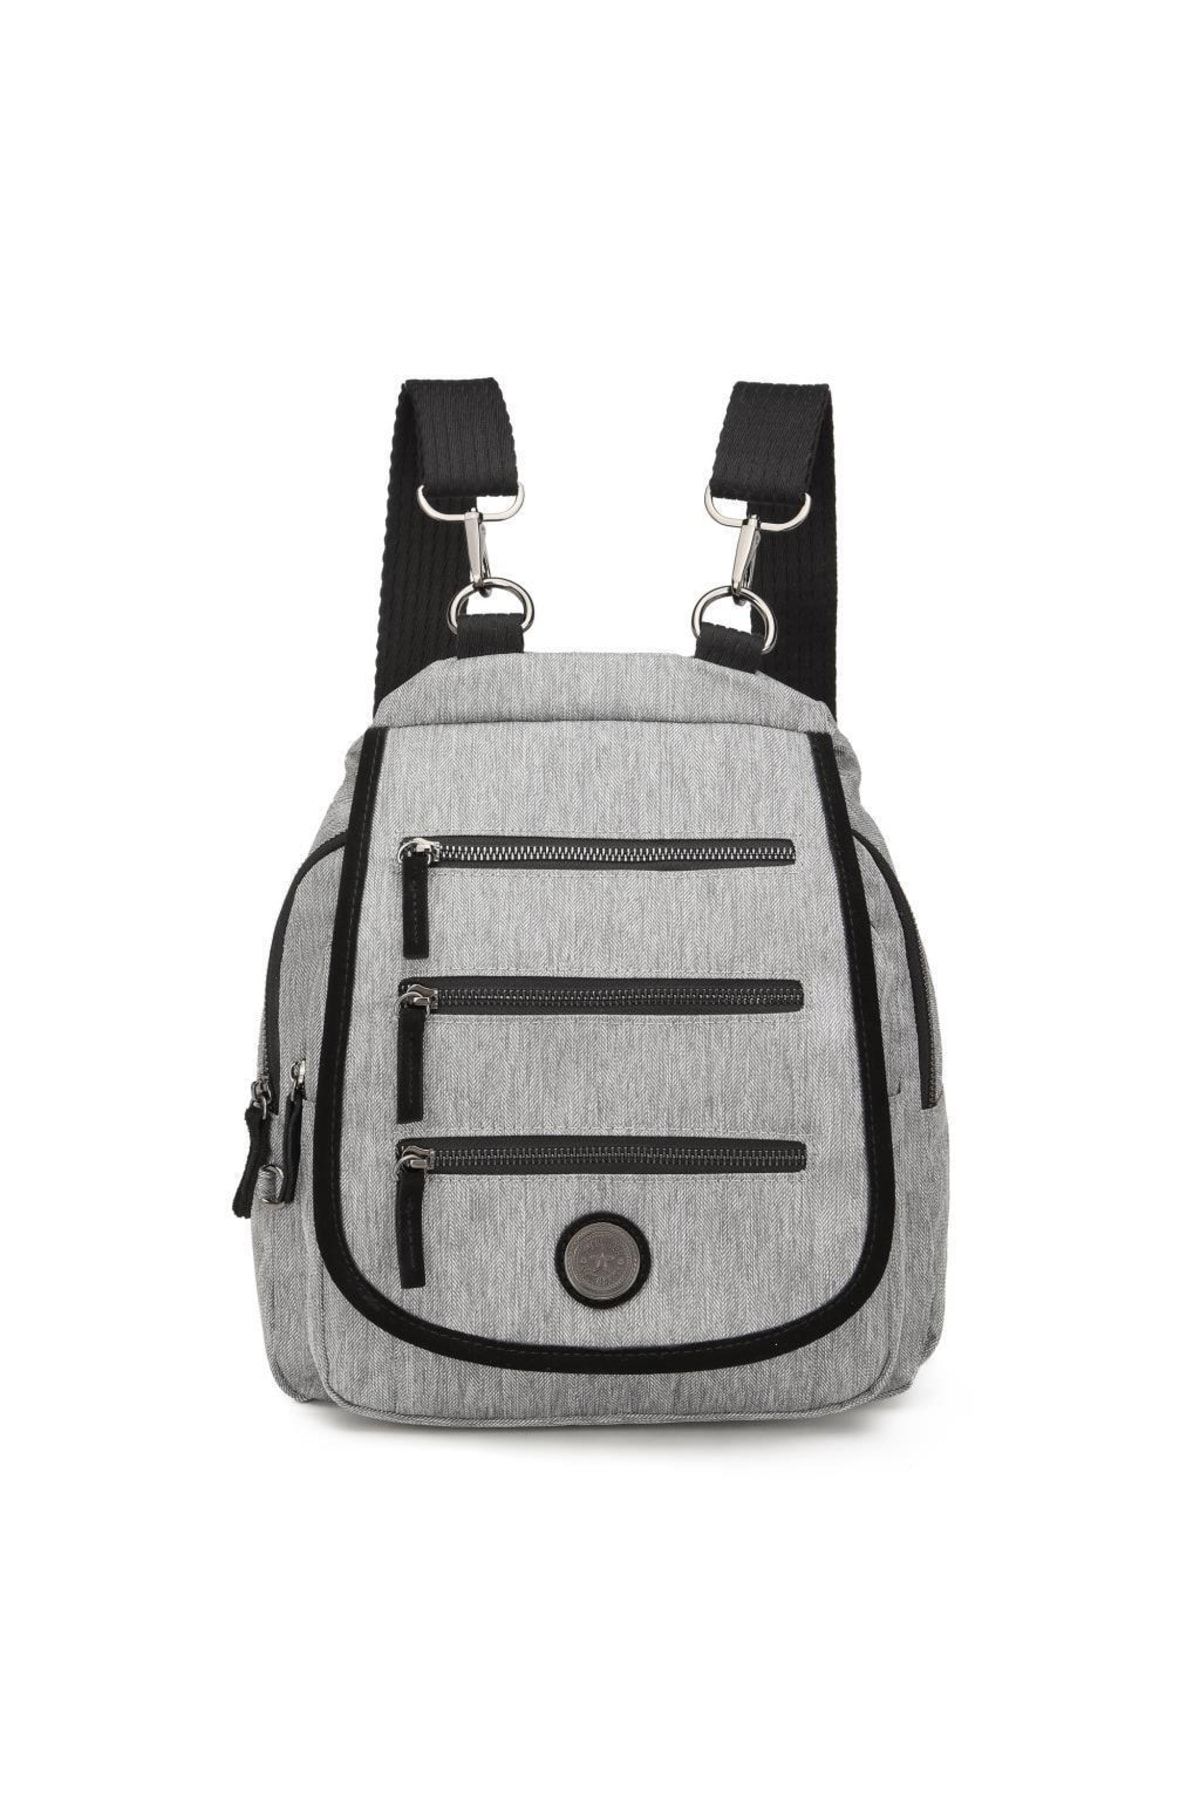 Smart Bags Special Edition 1169 Kol Ve Sırt Çantası Kırçıllı Gri/siyah